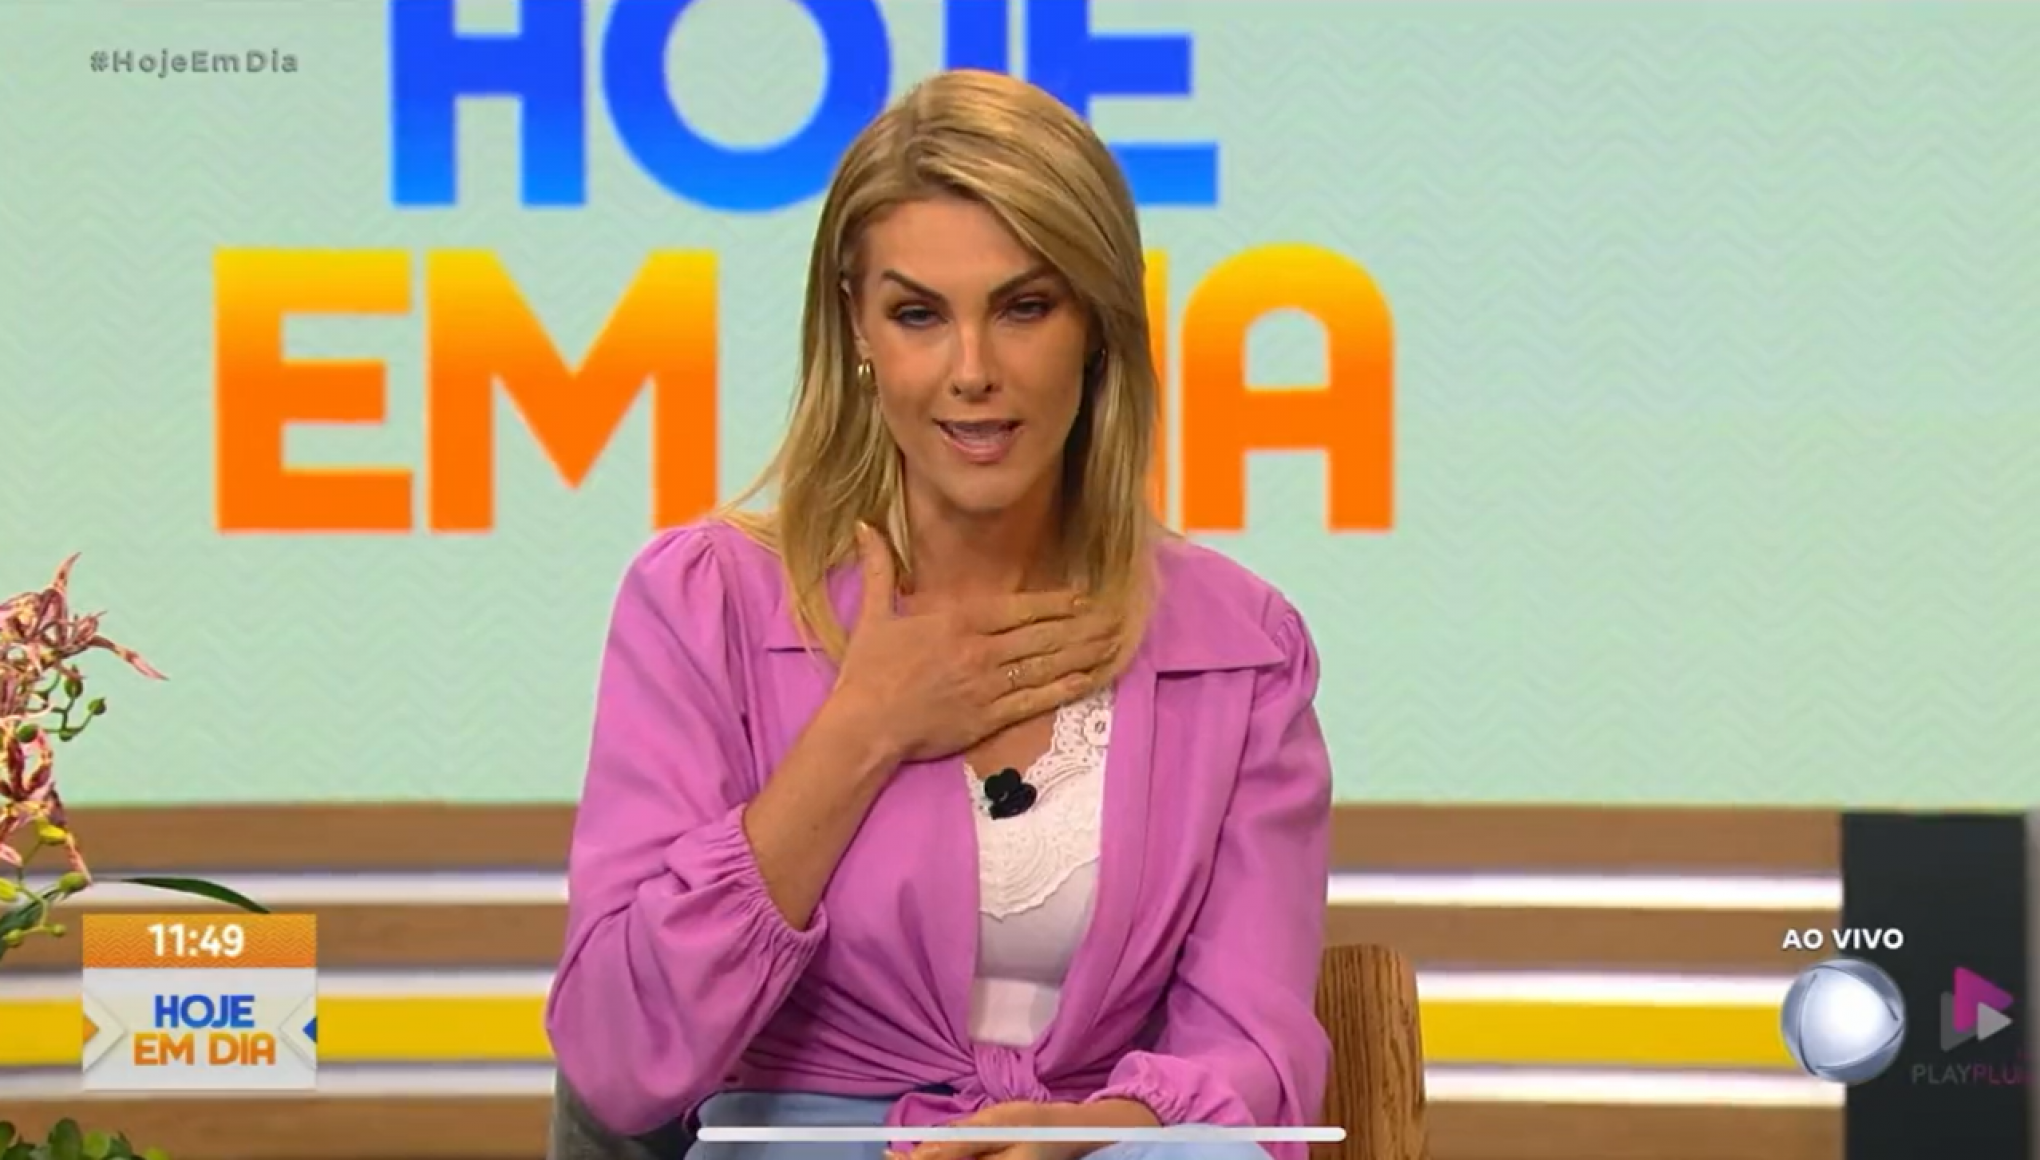 ANA HICKMANN: "Momento difícil", apresentadora se manifesta sobre caso de agressão, em programa de TV